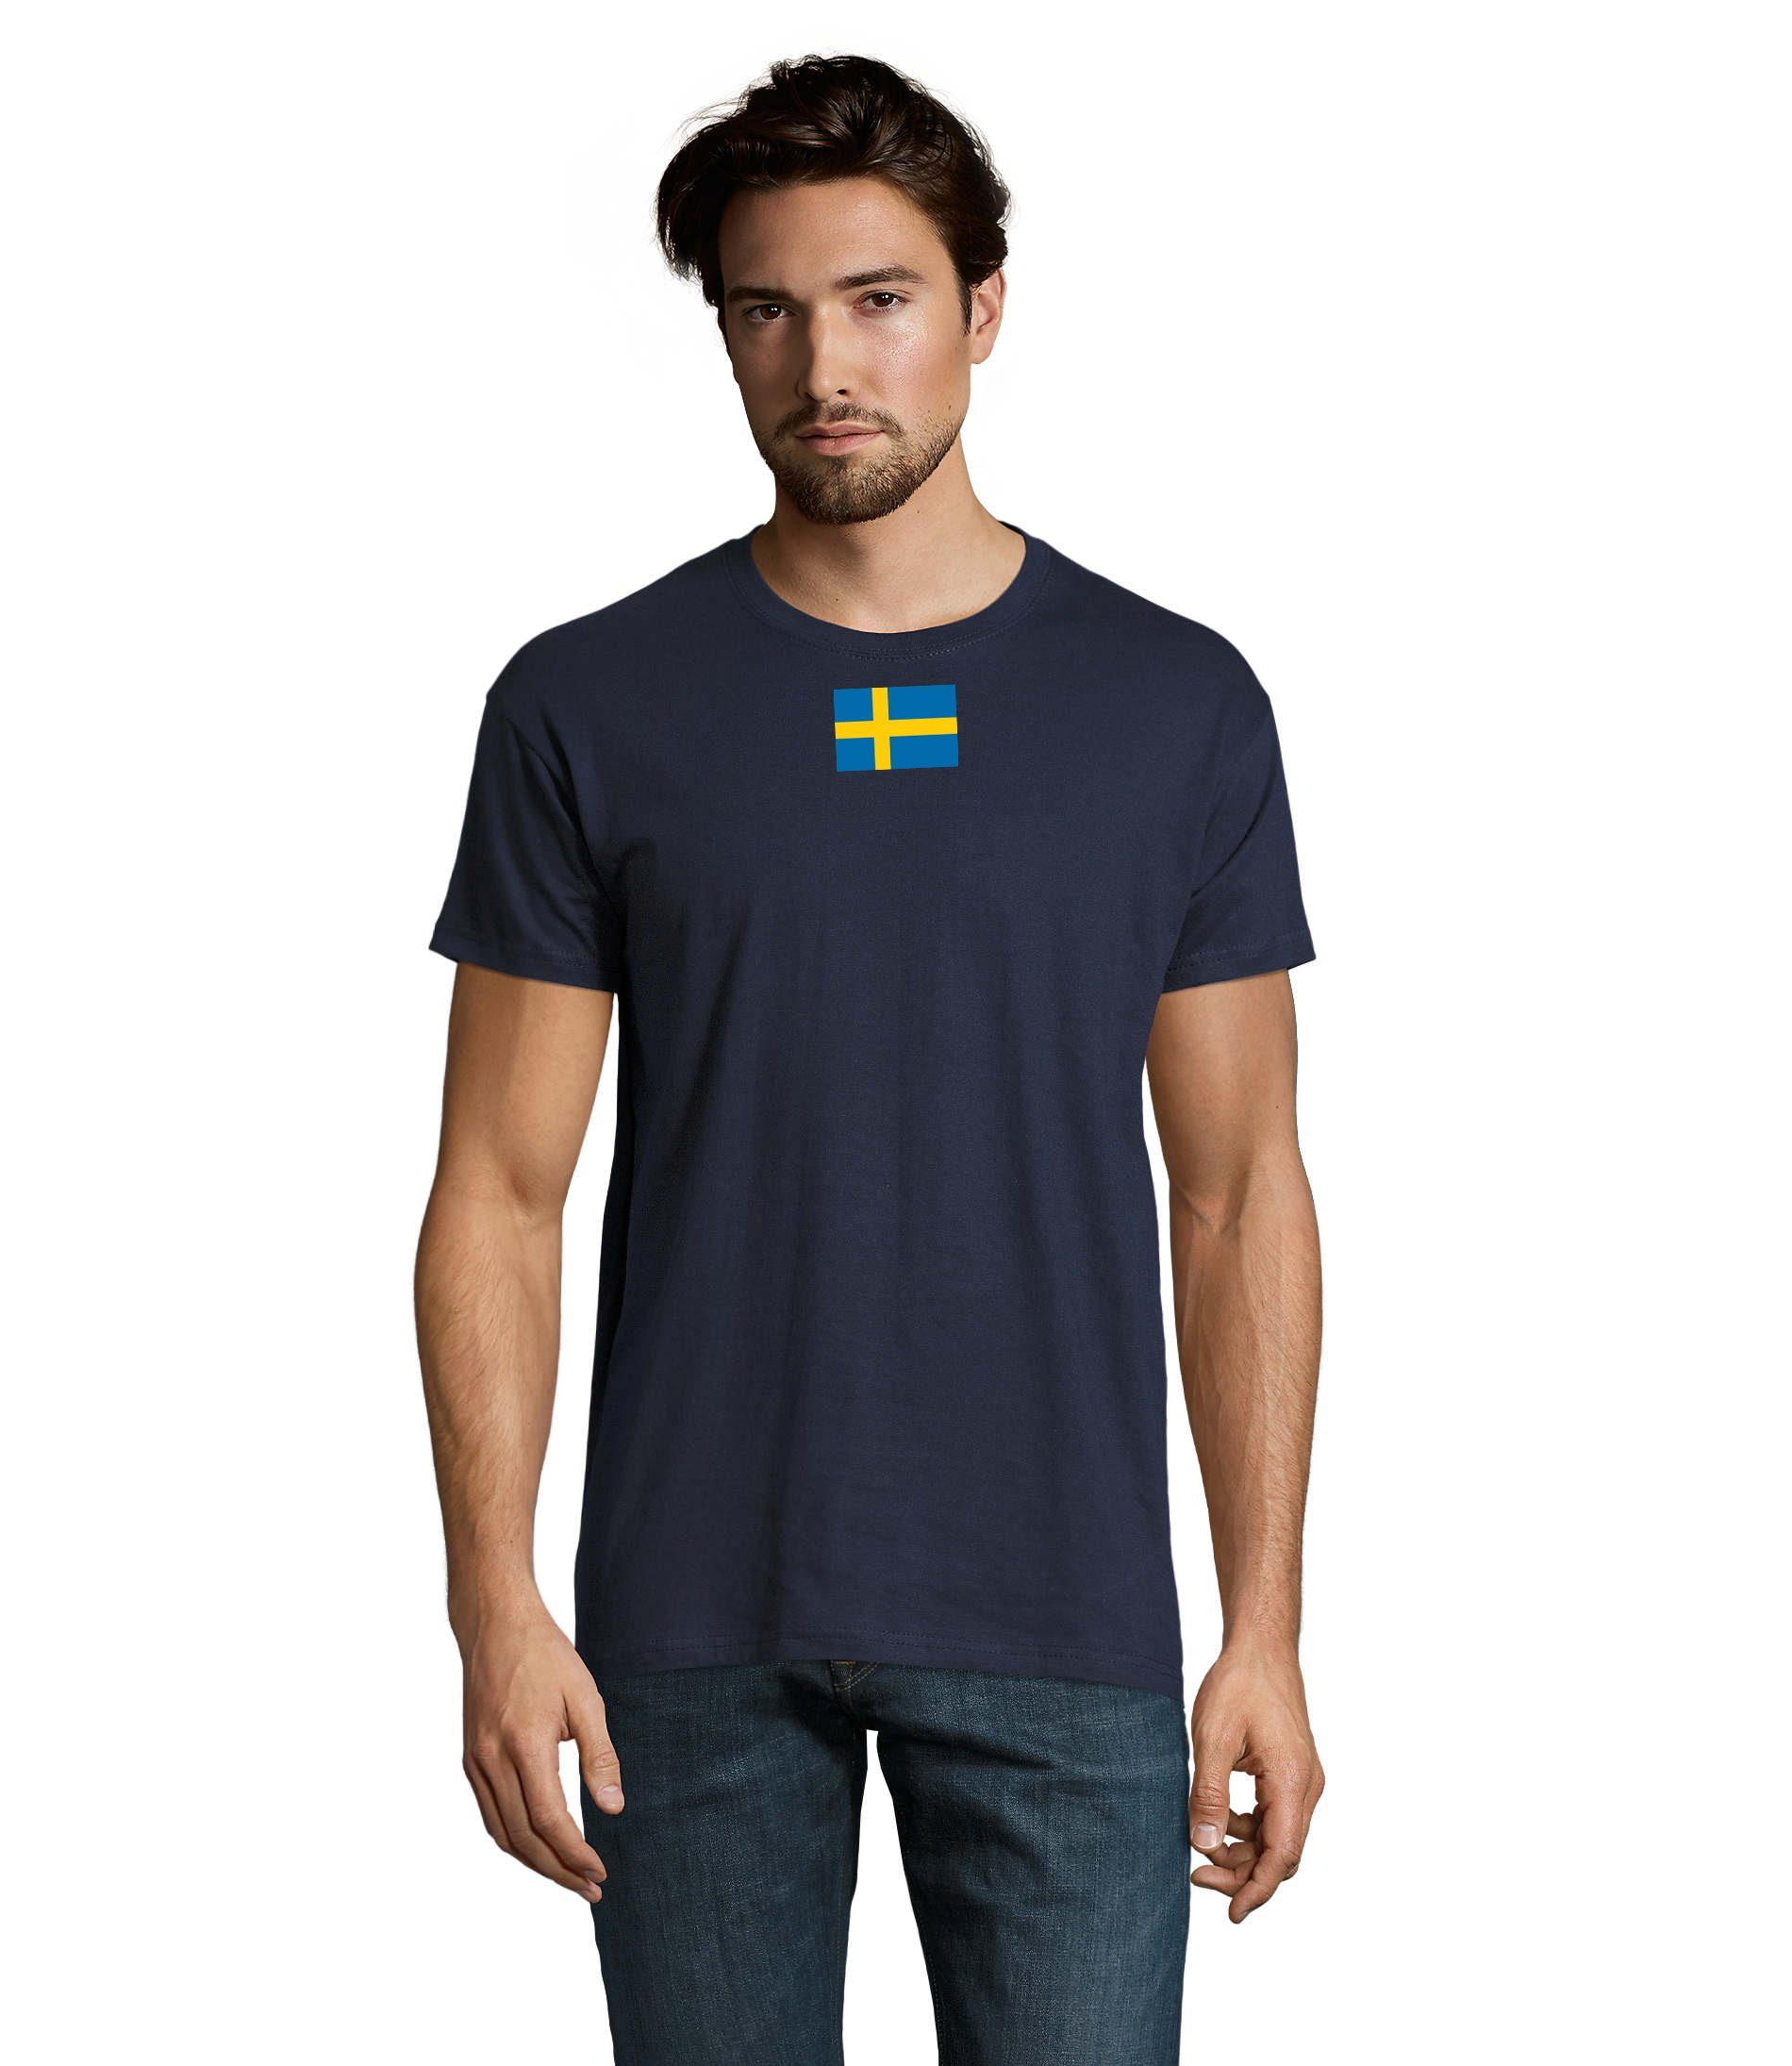 Blondie & Brownie T-Shirt Herren Schweden Ukraine USA Army Armee Nato Peace Air Force Navyblau